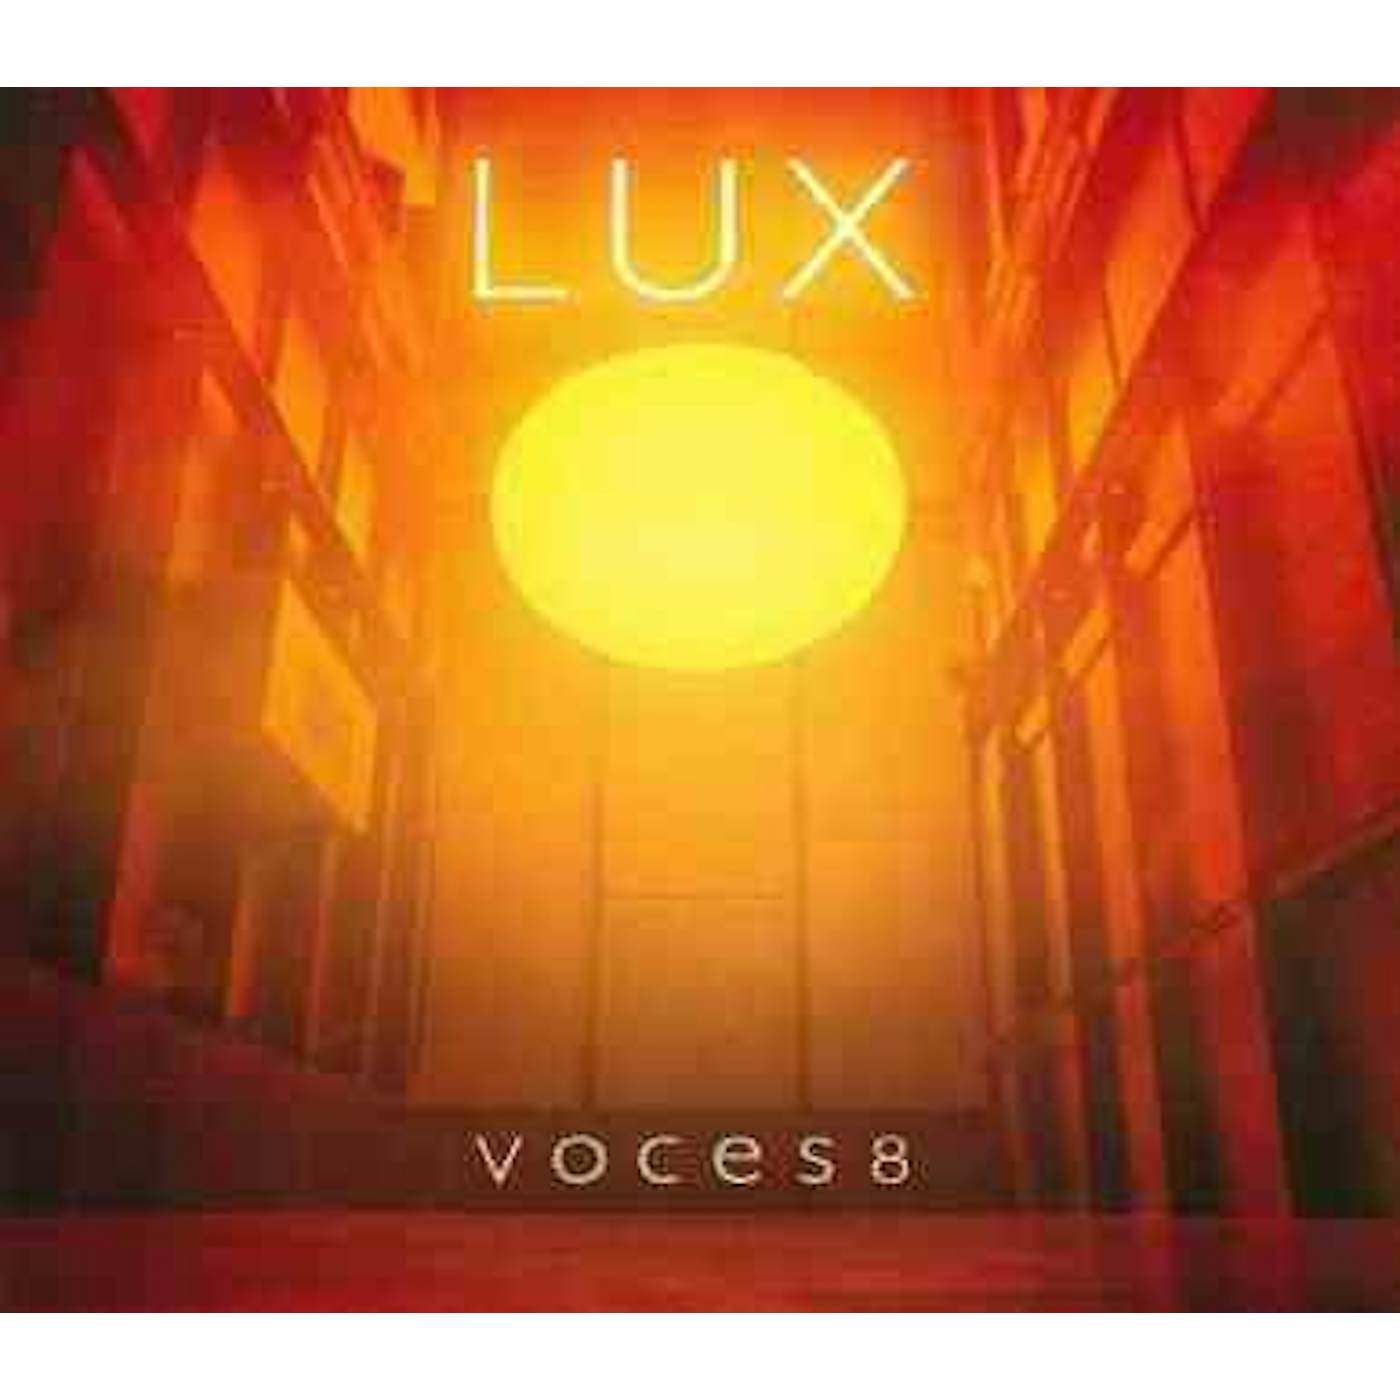 VOCES8 LUX CD